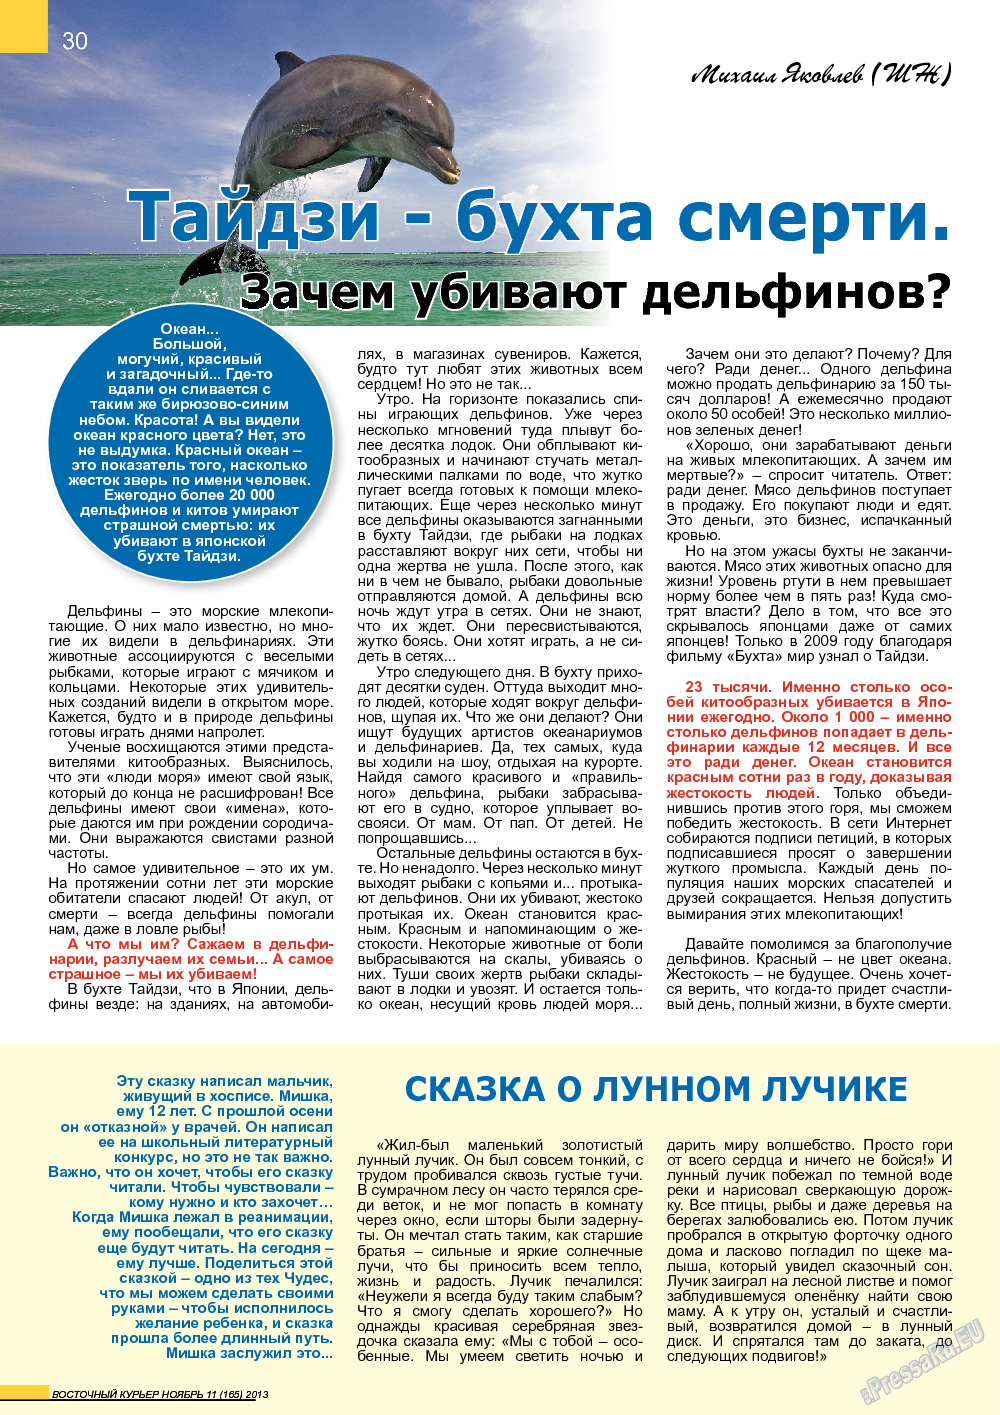 Восточный курьер, журнал. 2013 №11 стр.30